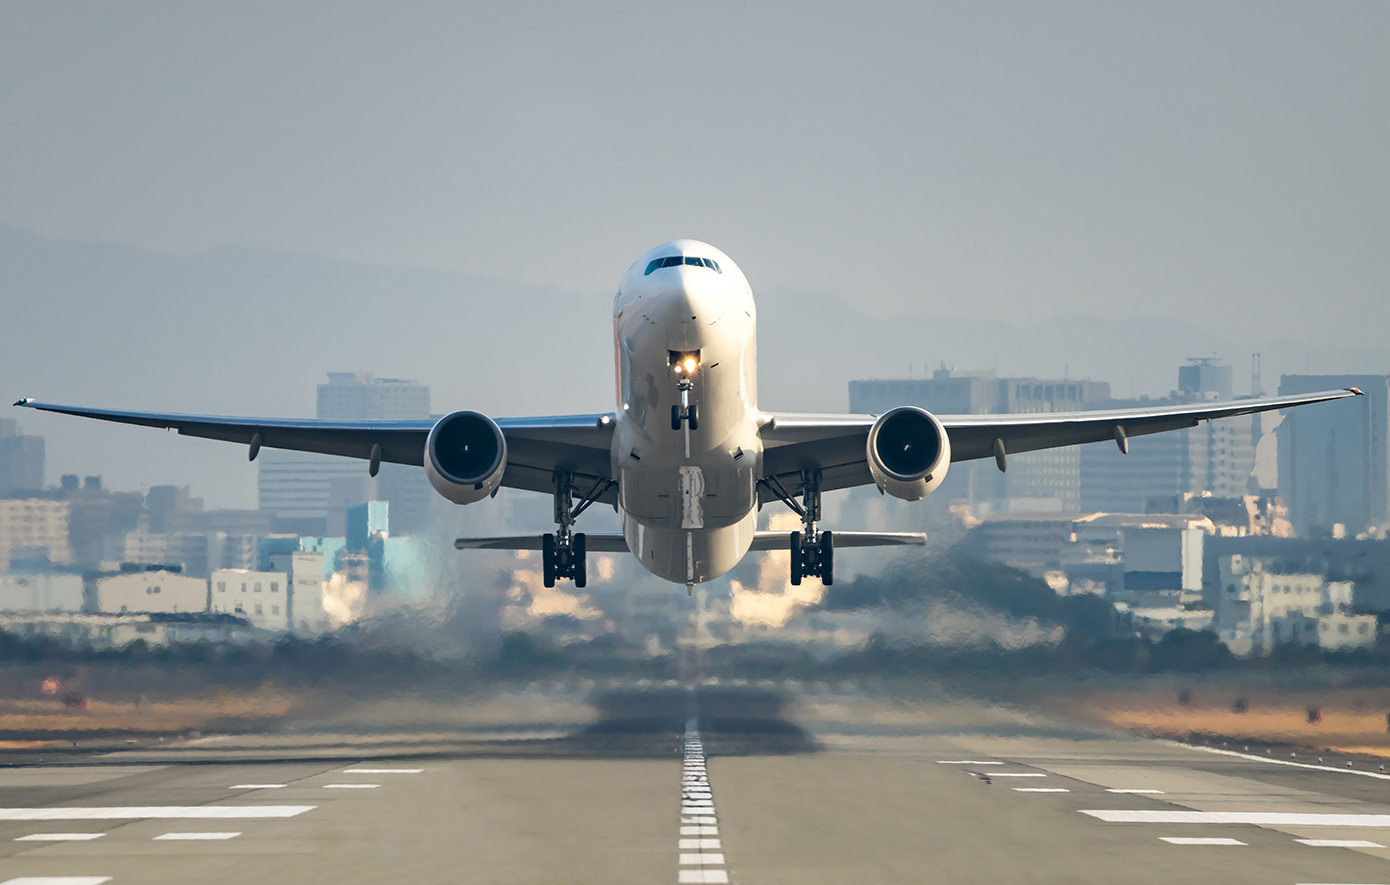 Αυξημένη η πληρότητα στα αεροπλάνα για τα τριήμερα της Καθαράς Δευτέρας και 25ης Μαρτίου